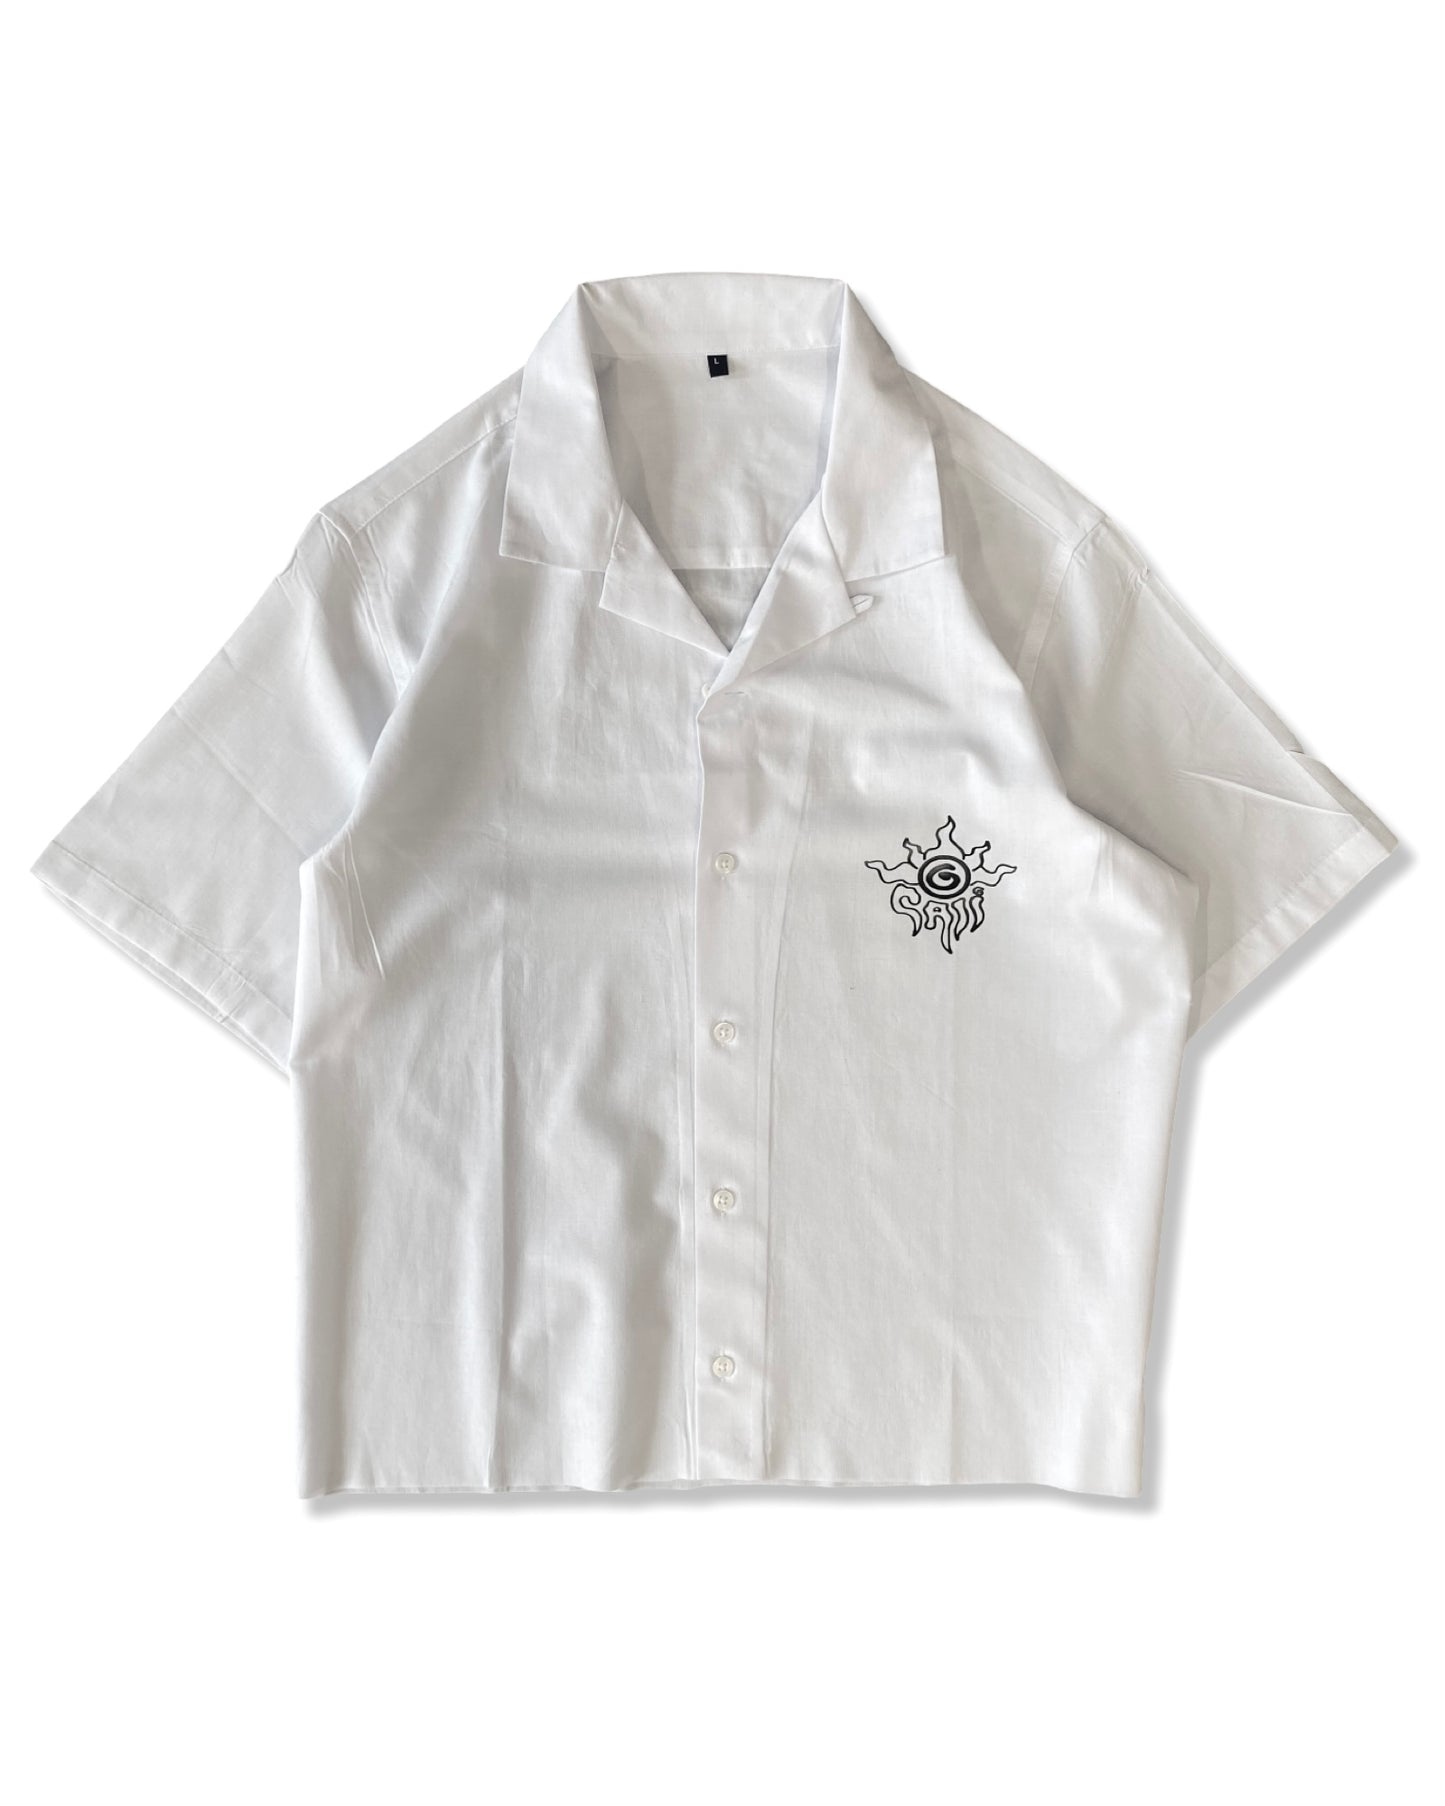 Resort Shirt - White